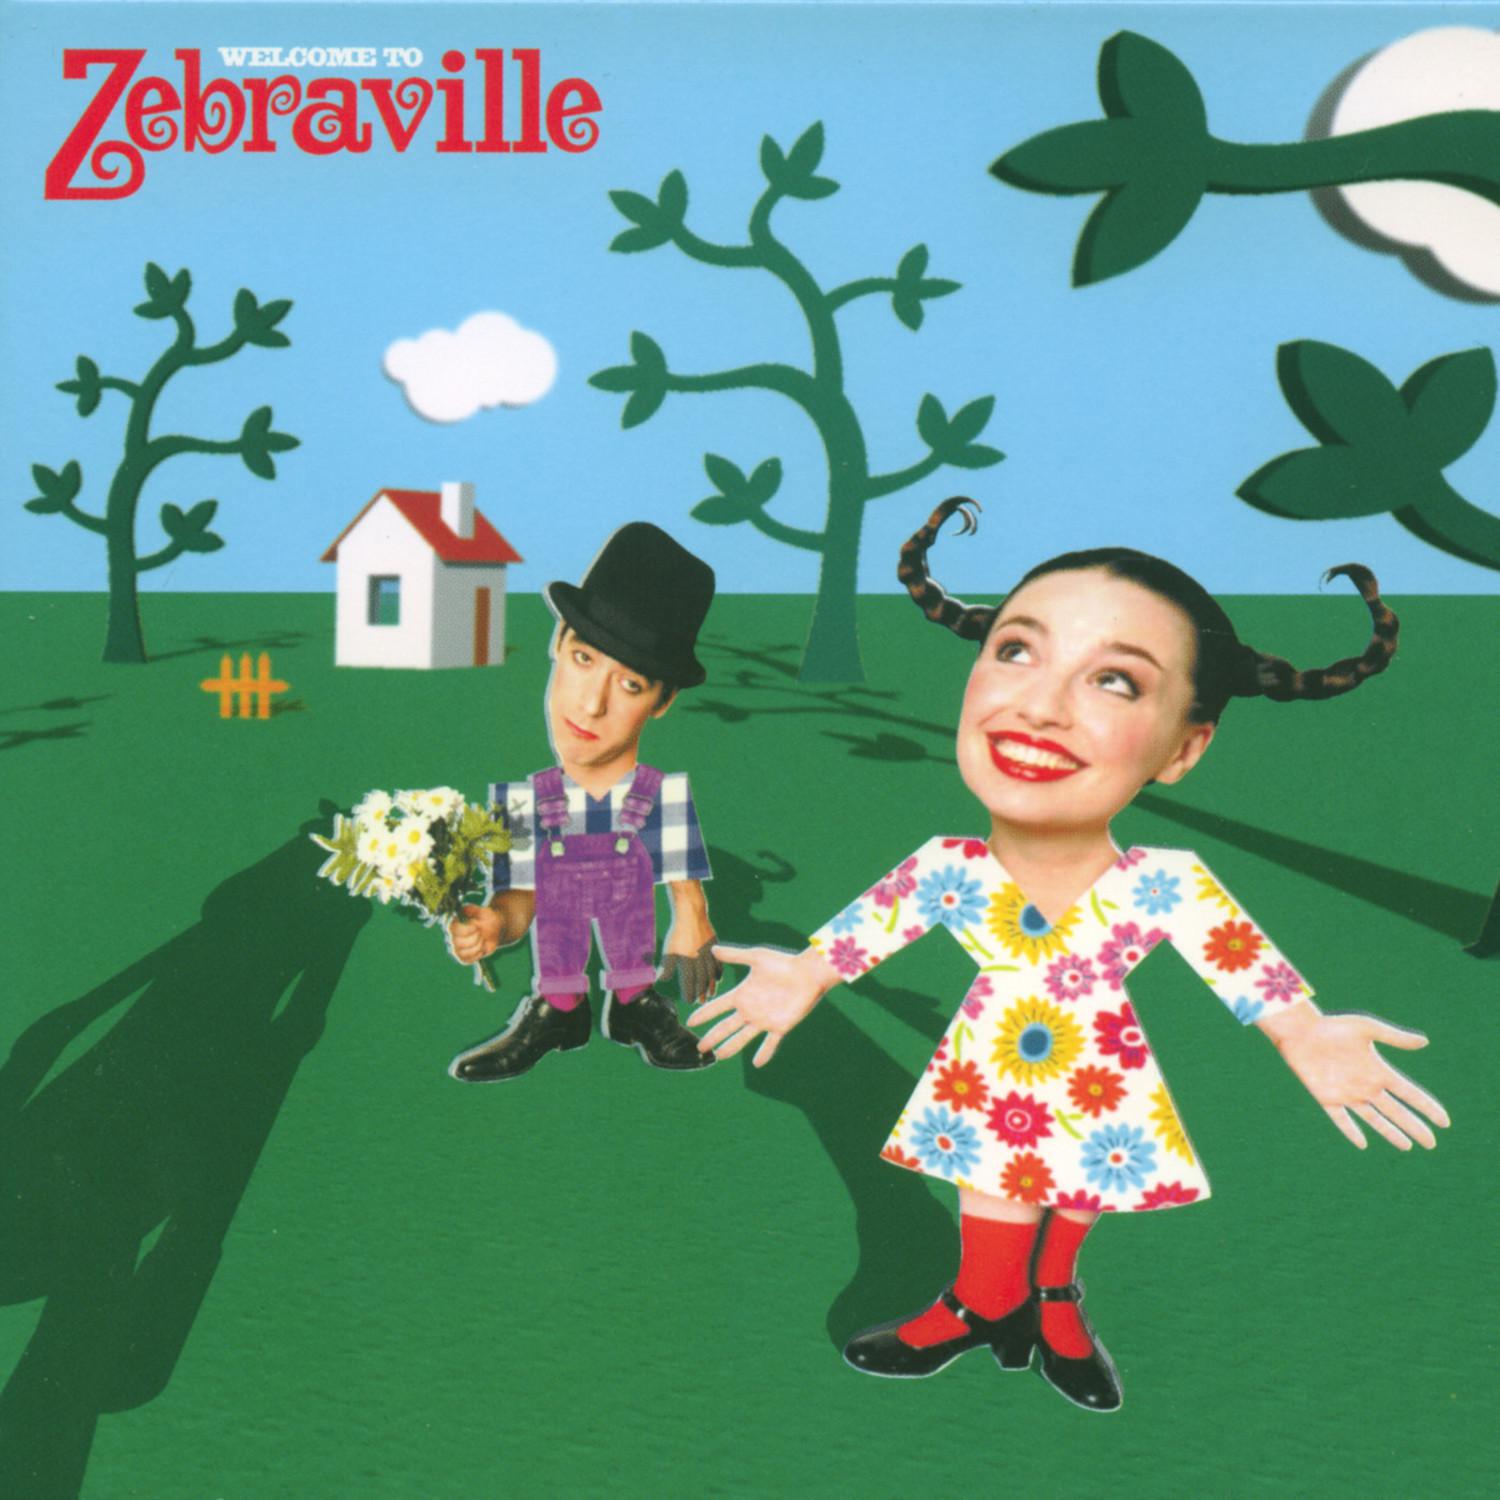 Zebraville - Valentine